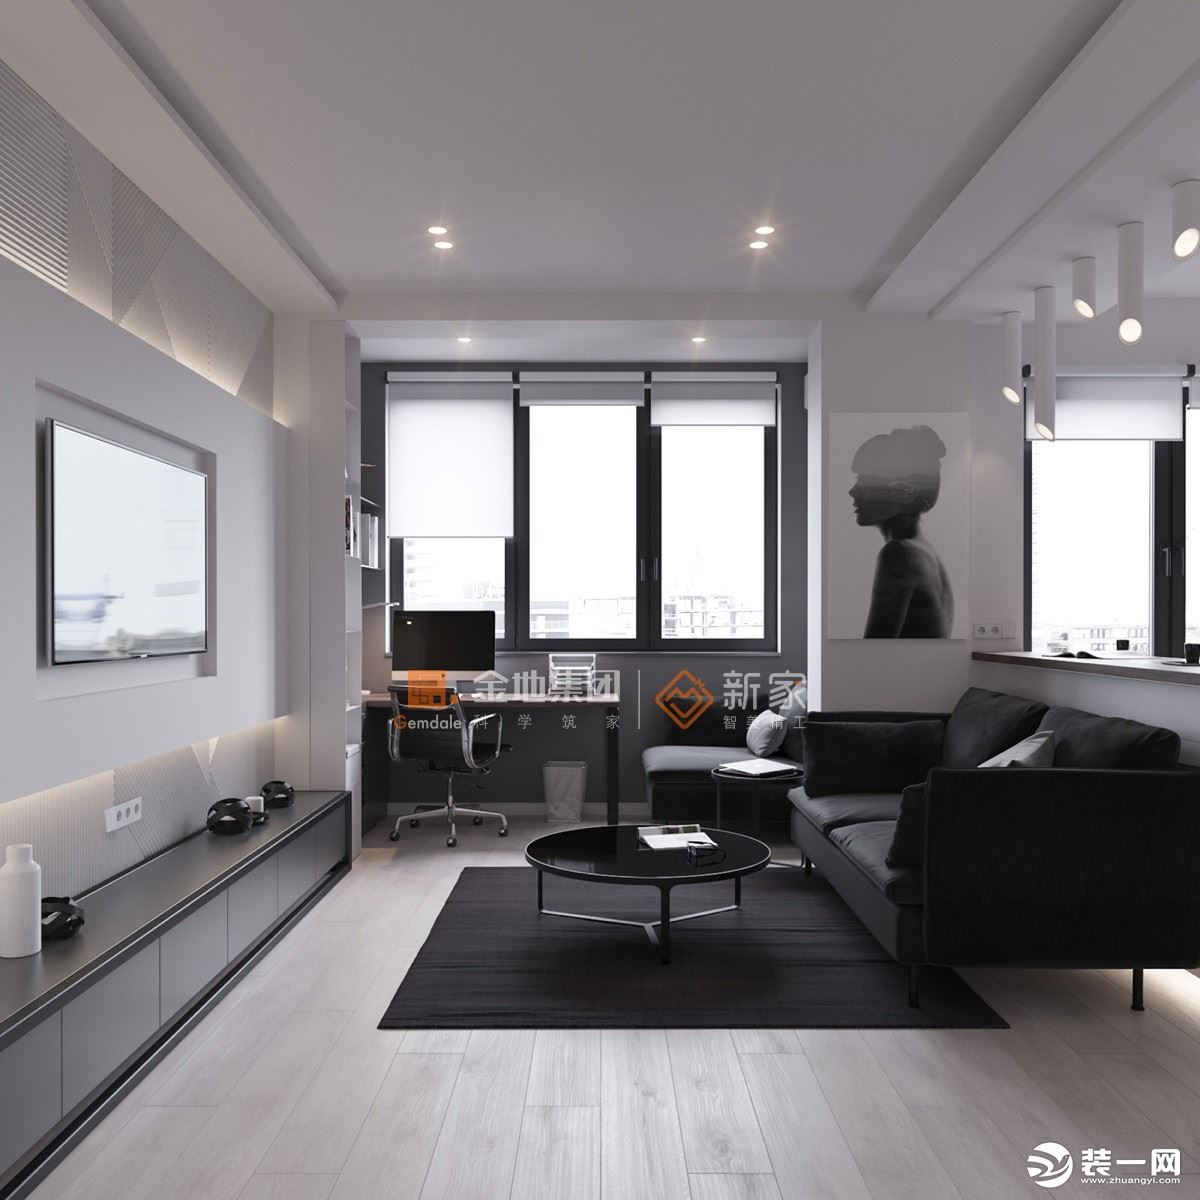 客厅2：以白色为基调，搭配黑色家饰，极简风格的灯饰，细节处更突出极简空间的精致感。